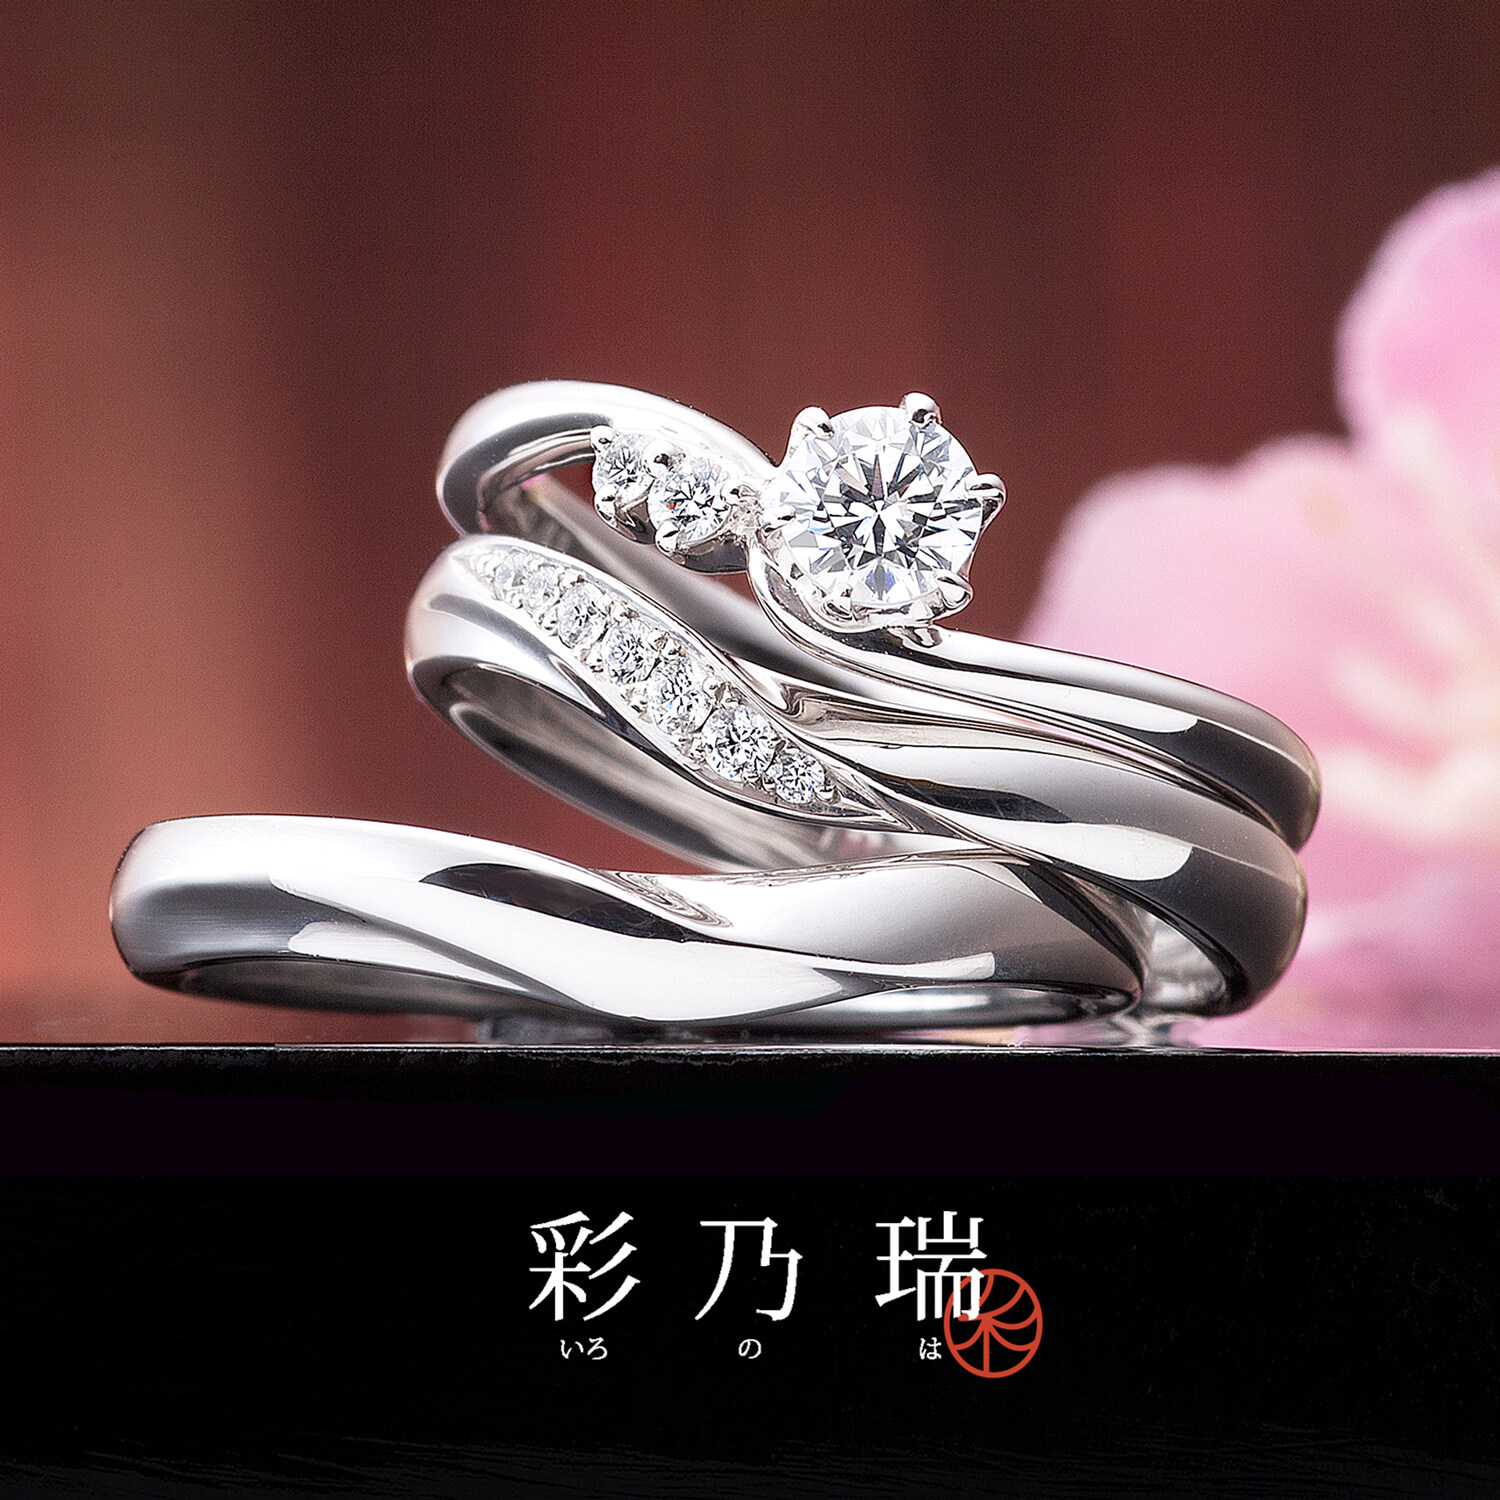 彩乃瑞いろのはの婚約指輪と結婚指輪幸せの空模様しあわせのそらもよう